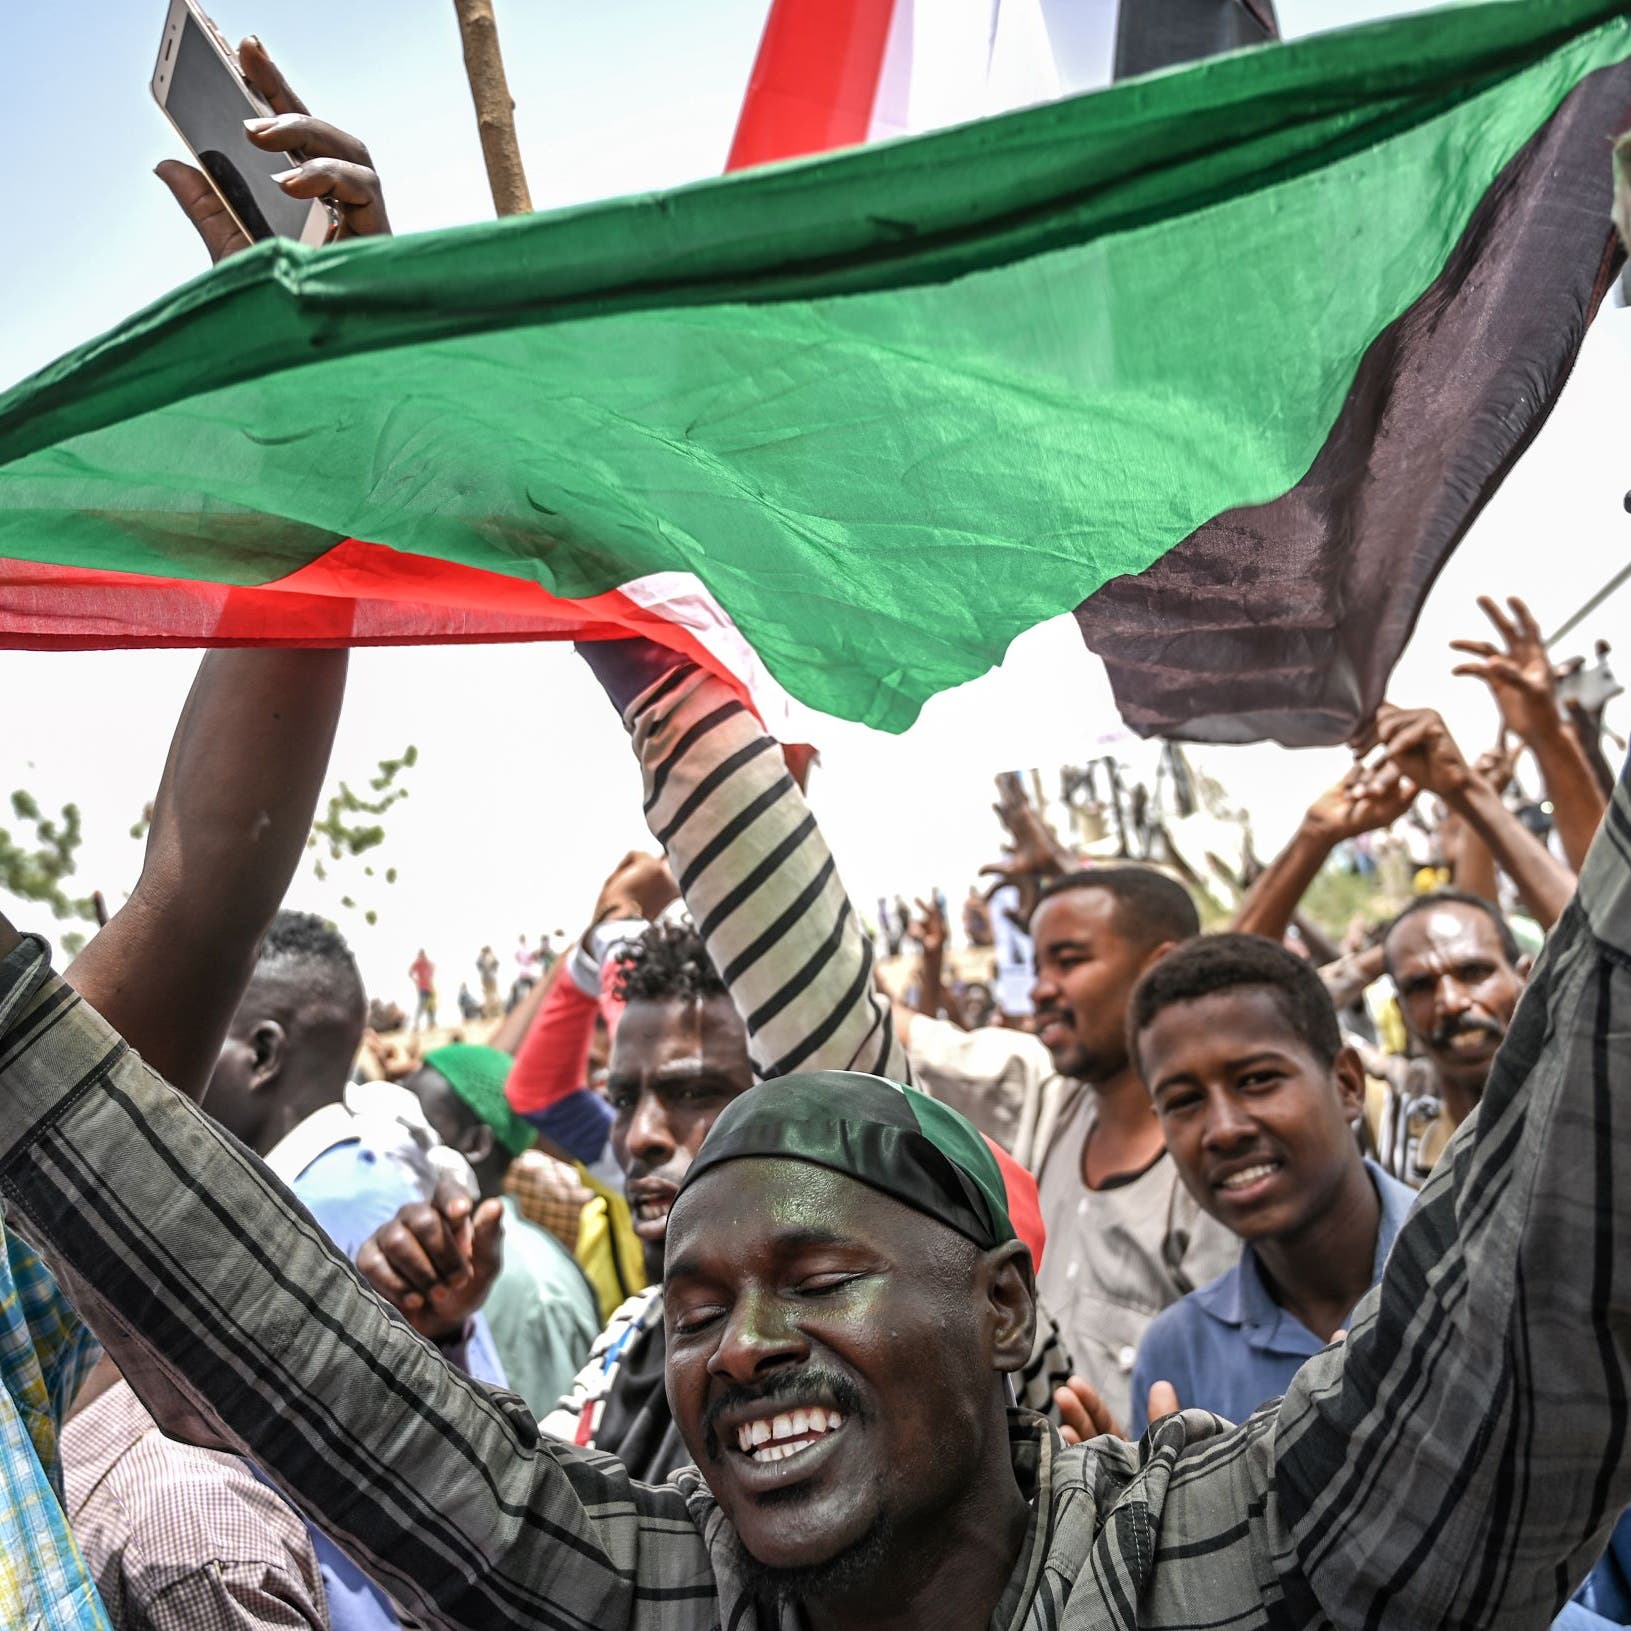 السودان.. مظاهرات بذكرى الثورة ومطالبات باستكمال هياكل الدولة  